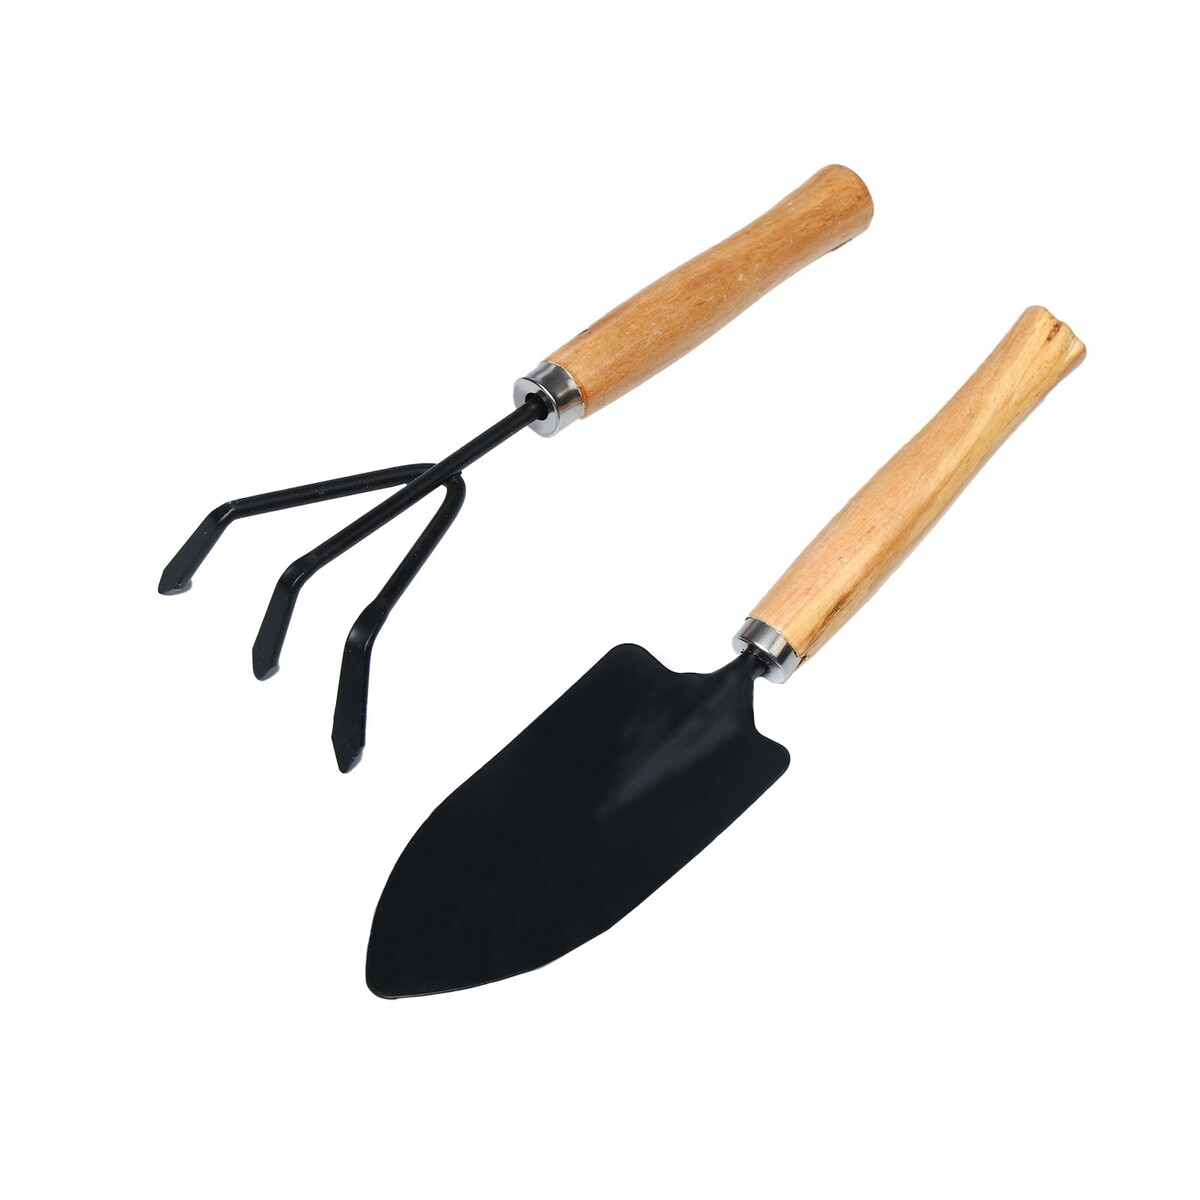 Набор садового инструмента, 2 предмета: рыхлитель, совок, длина 26 см, деревянные ручки набор для игры в песке 108 3 формочки грабли совок 2 набор